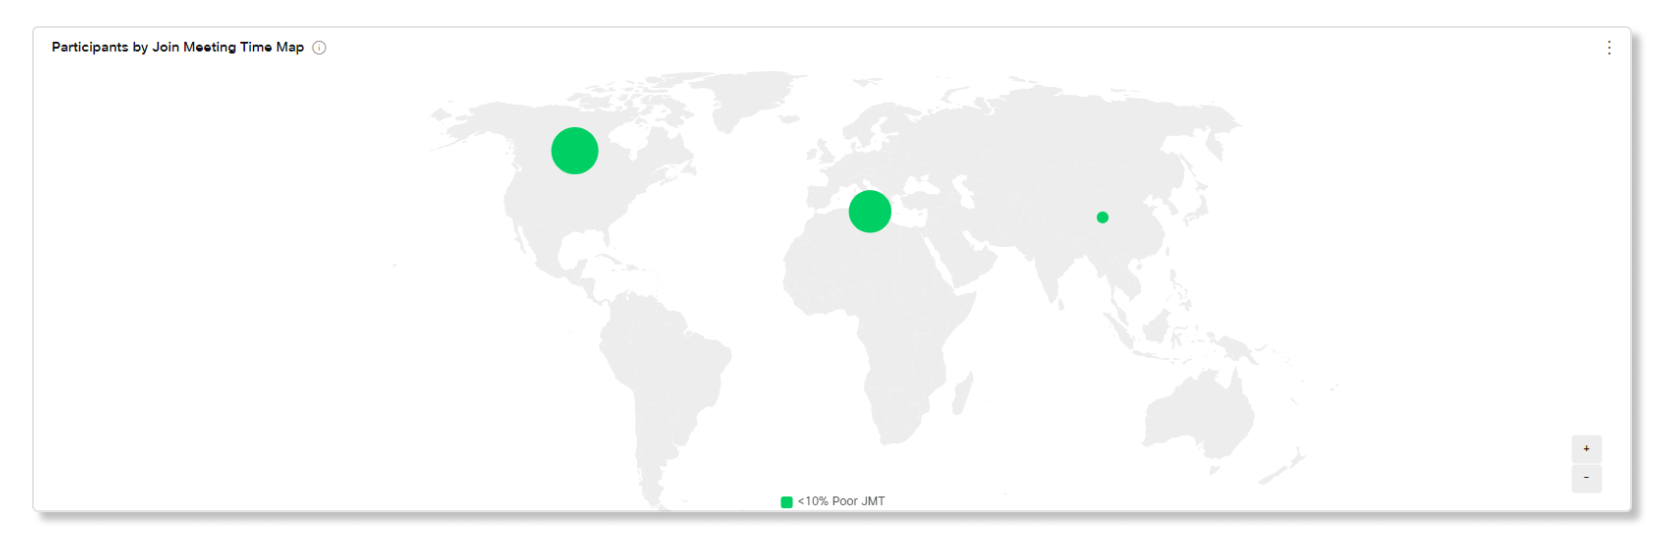 Časová mapa účastníků podle časové mapy schůzek v analýze schůzek